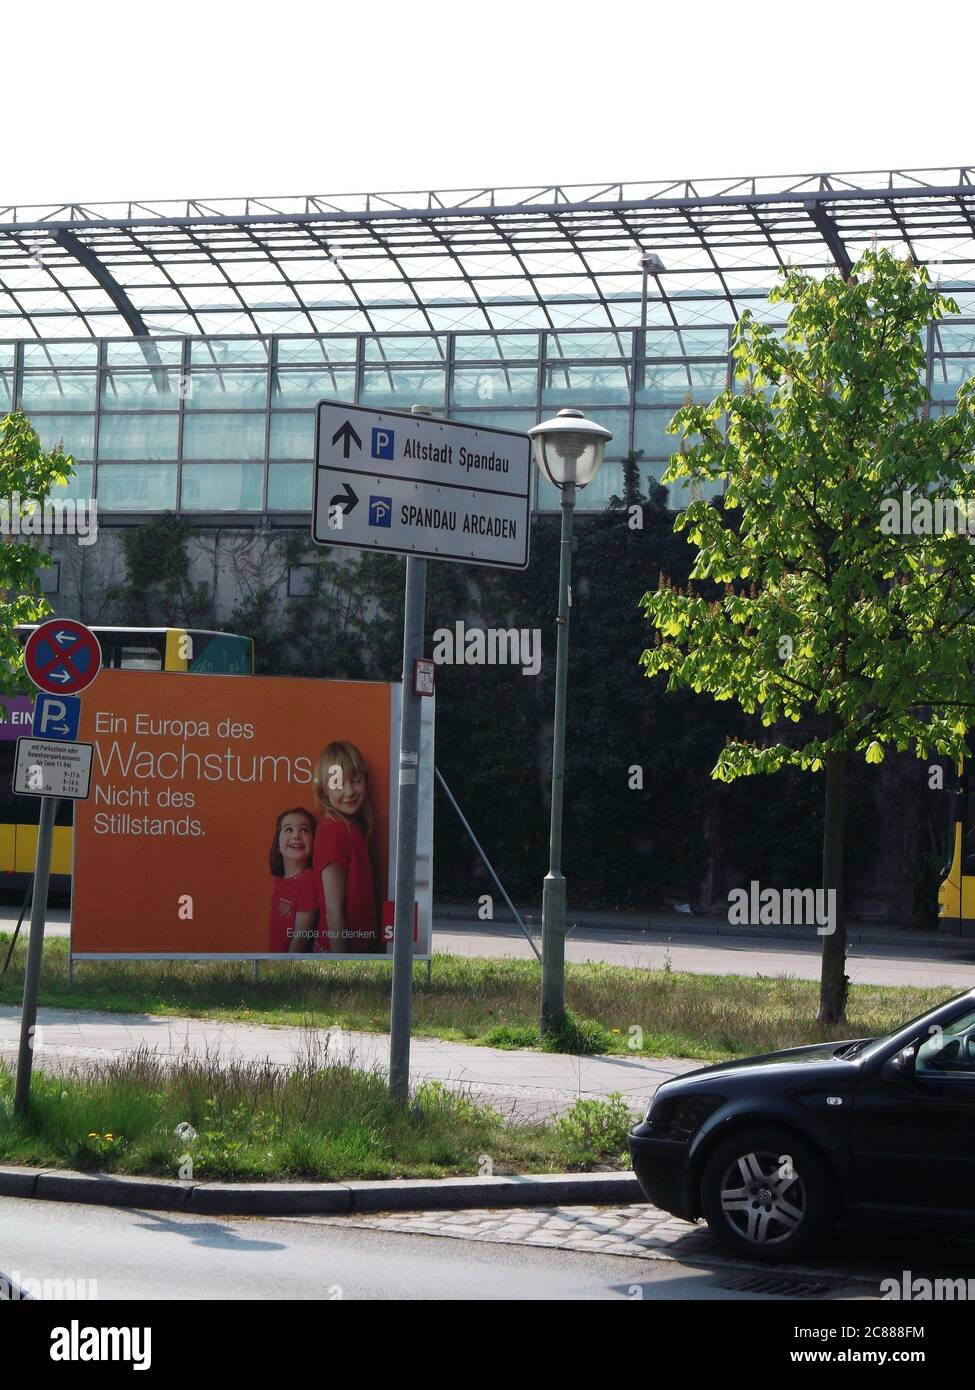 Ein Europa des Wachstums. Nicht des Stillstands, Wahlkampfplakat der SPD, Europawahl 2014, in der Seegefelder Straße vor dem Bahnhof Berlin-Spandau Stock Photo